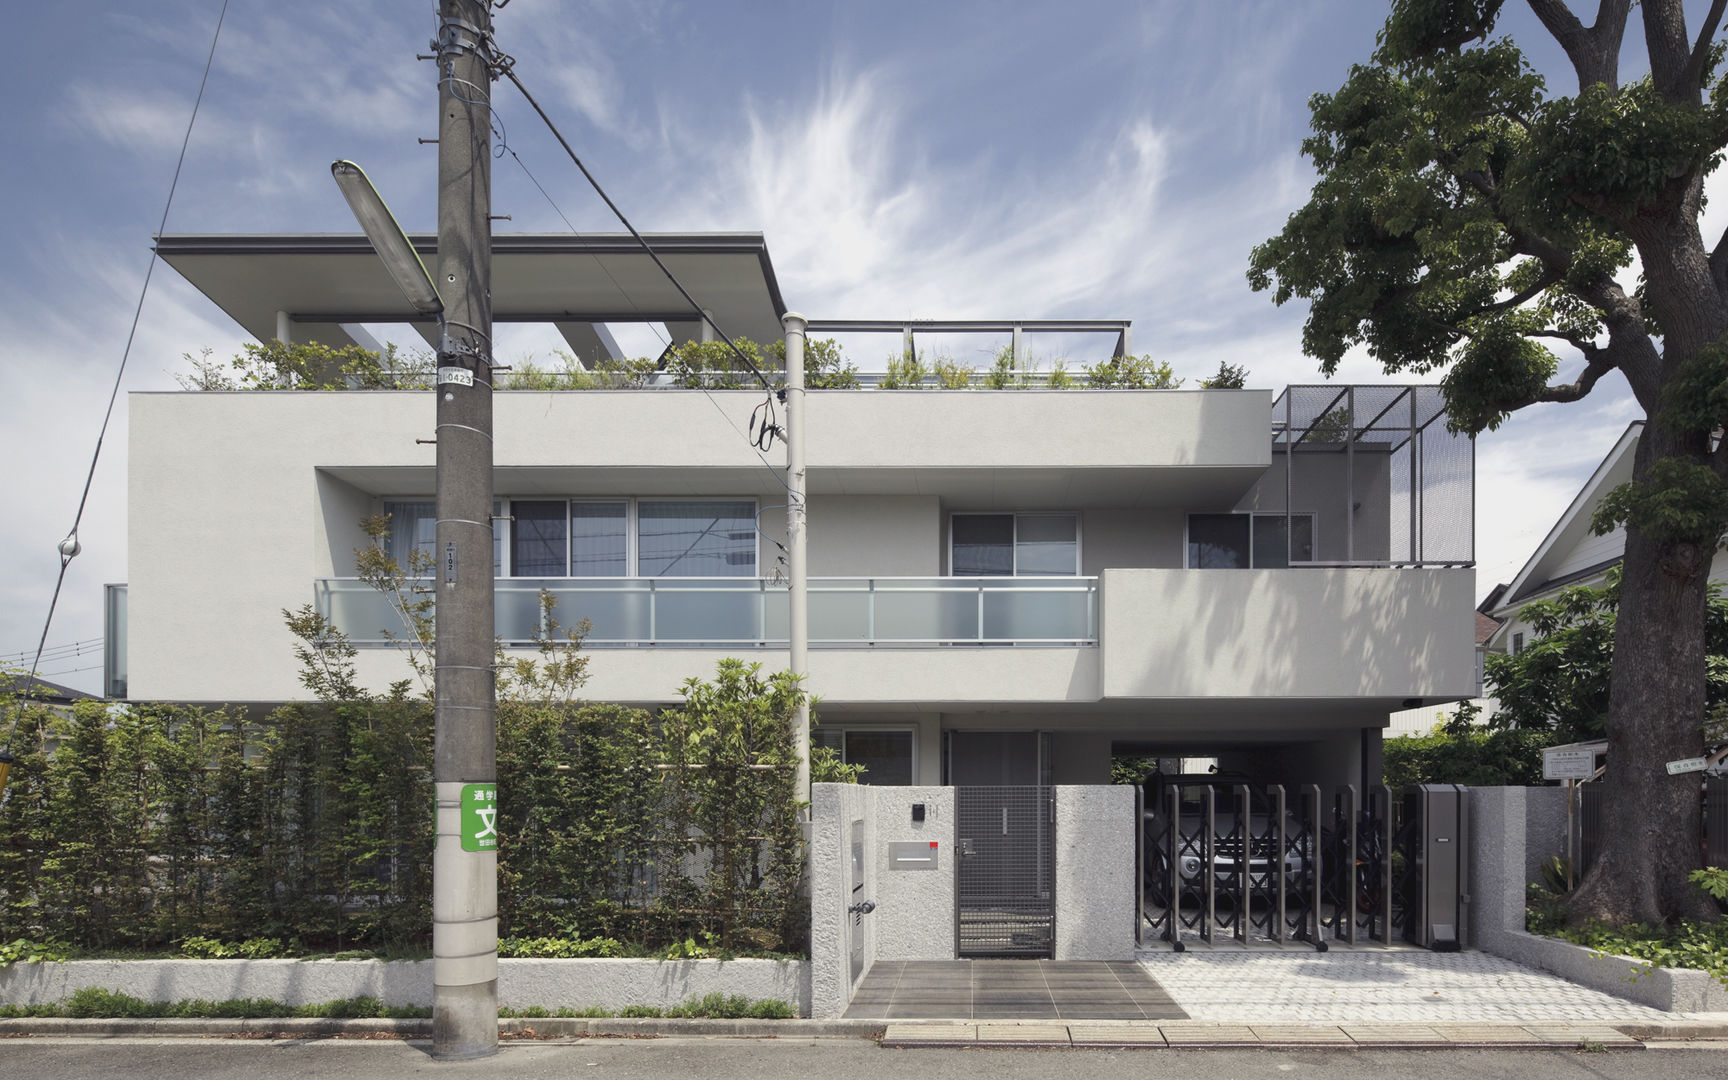 ミドセンチュリーテイスト 居間がテラスと一体化して繋がる成城の住まい, JWA，Jun Watanabe & Associates JWA，Jun Watanabe & Associates Casas modernas: Ideas, diseños y decoración